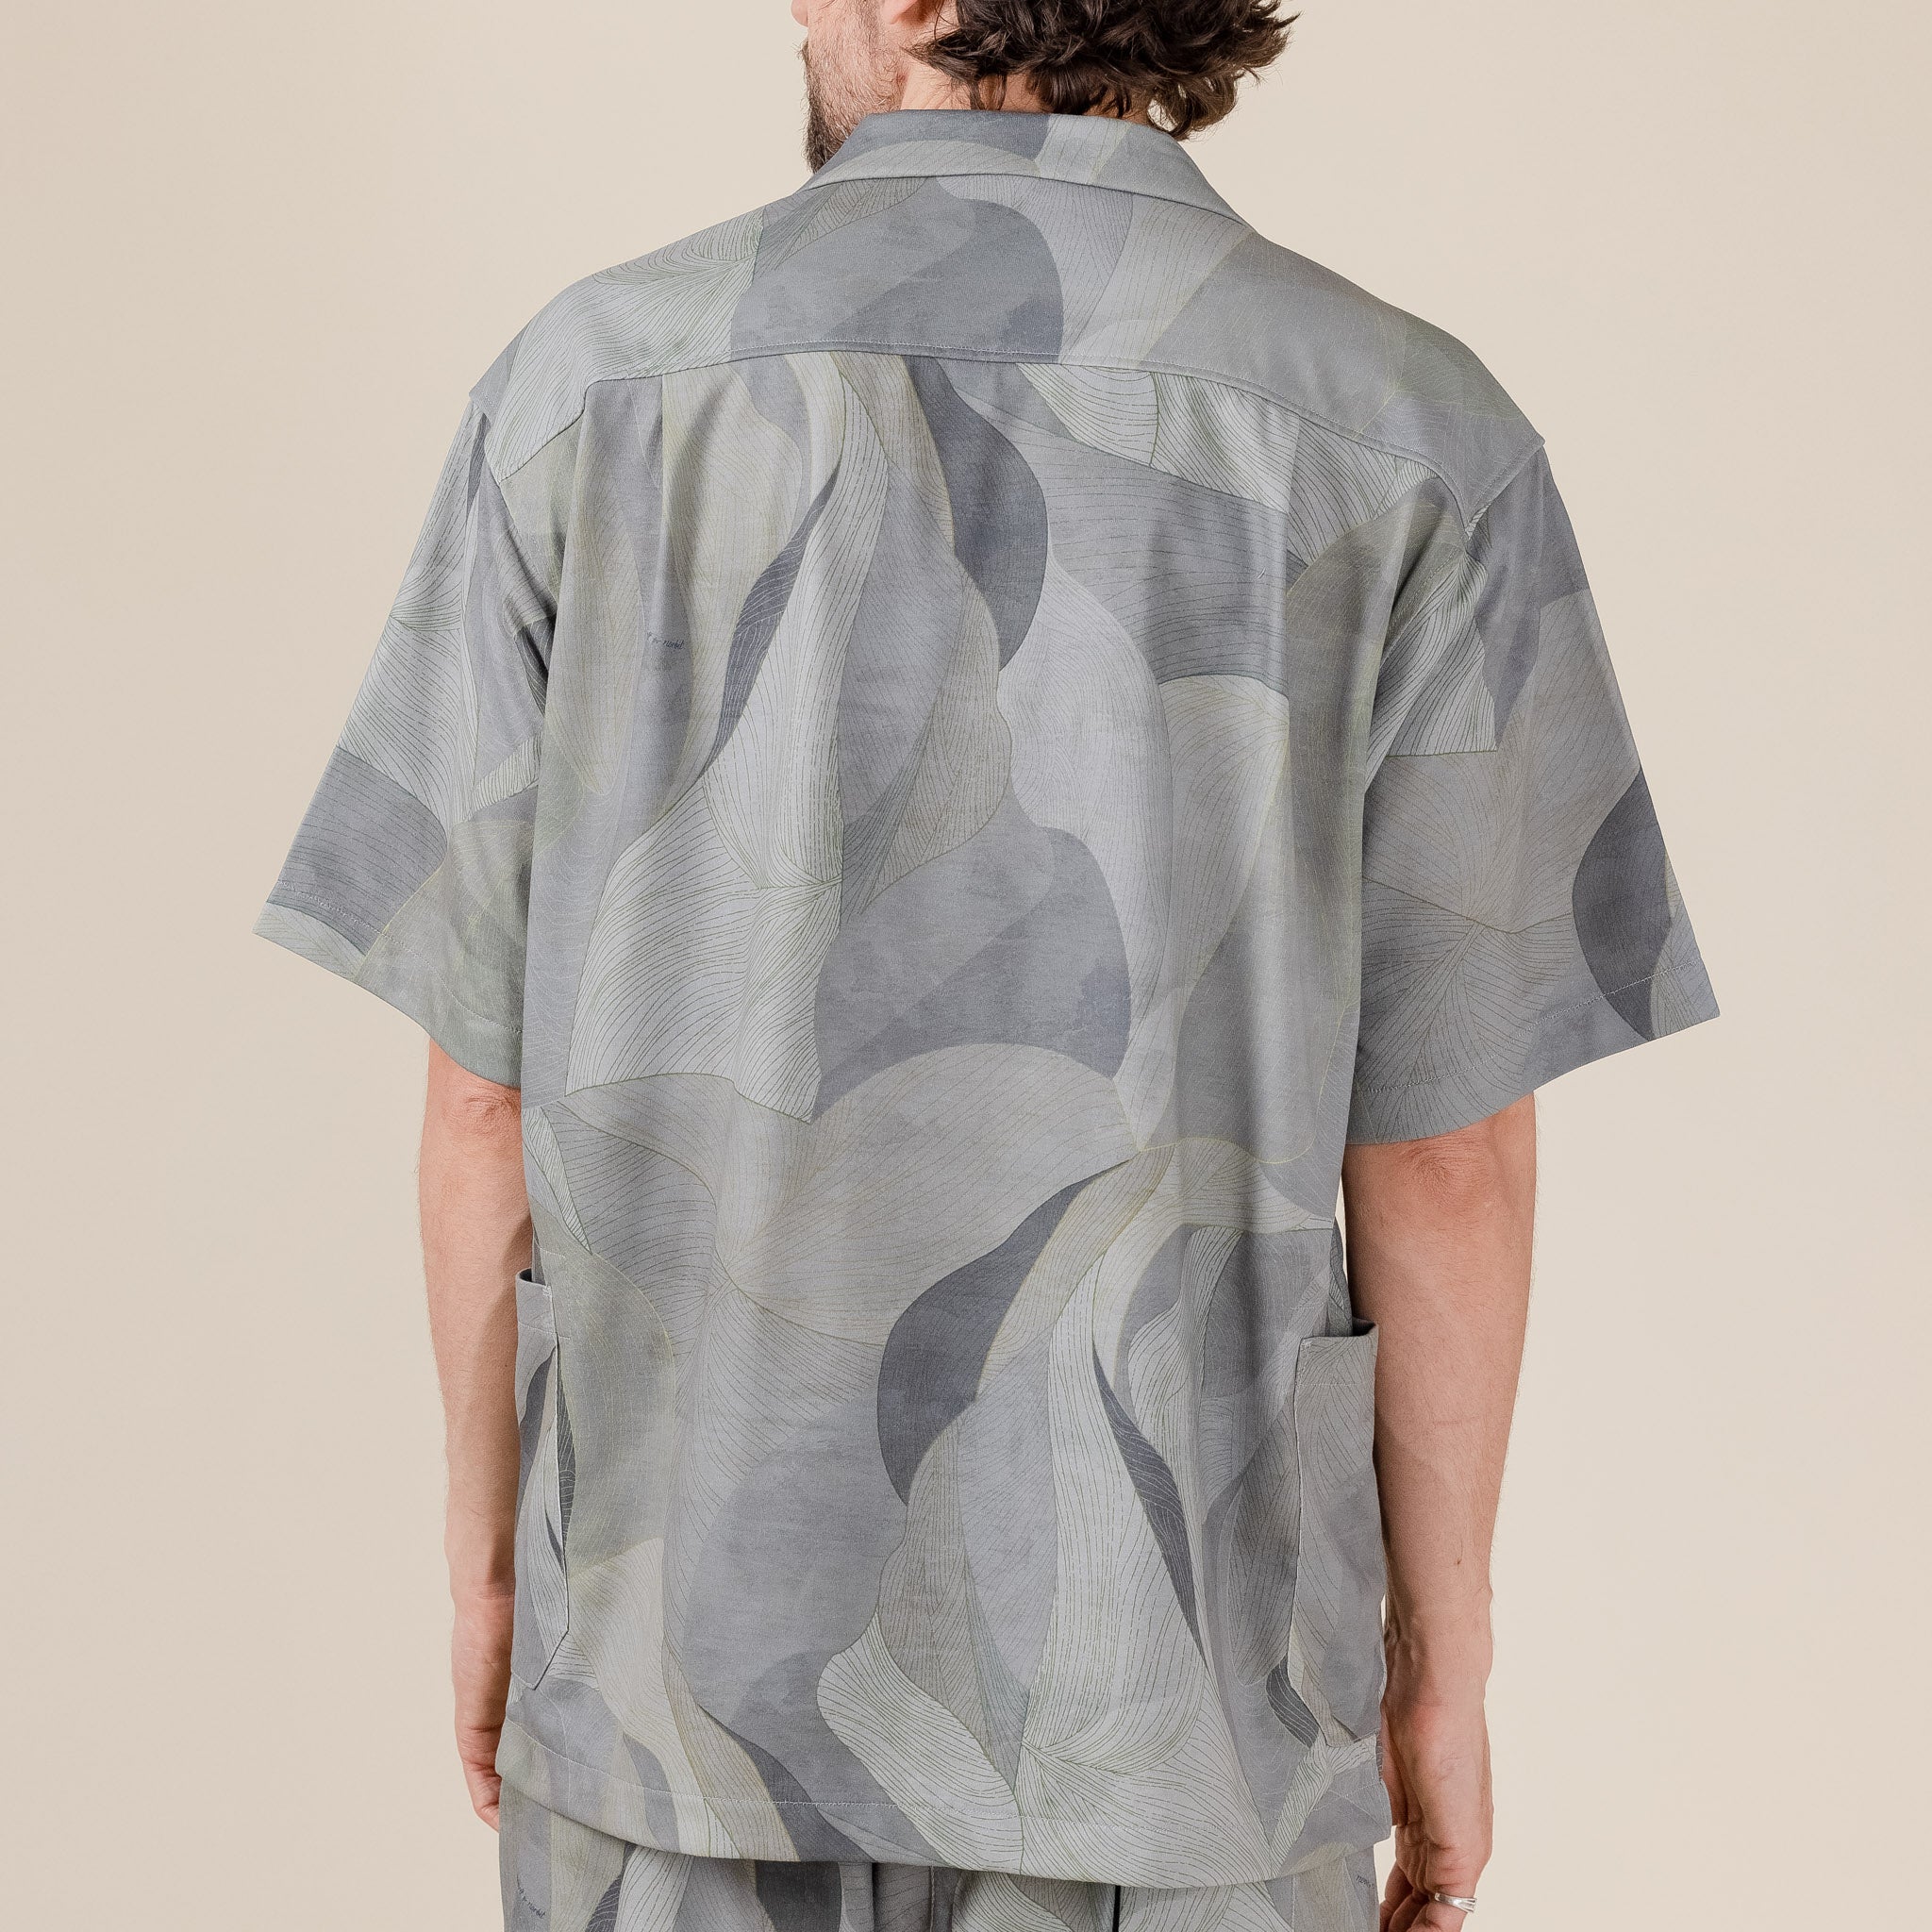 Norbit by Hiroshi Nozawa - Aloha Shirt Art Camo - Grey "norbit Hiroshi nozawa" "norbit stockists" "norbit Hiroshi nozawa stockists" "Norbit sale" HNSH-037